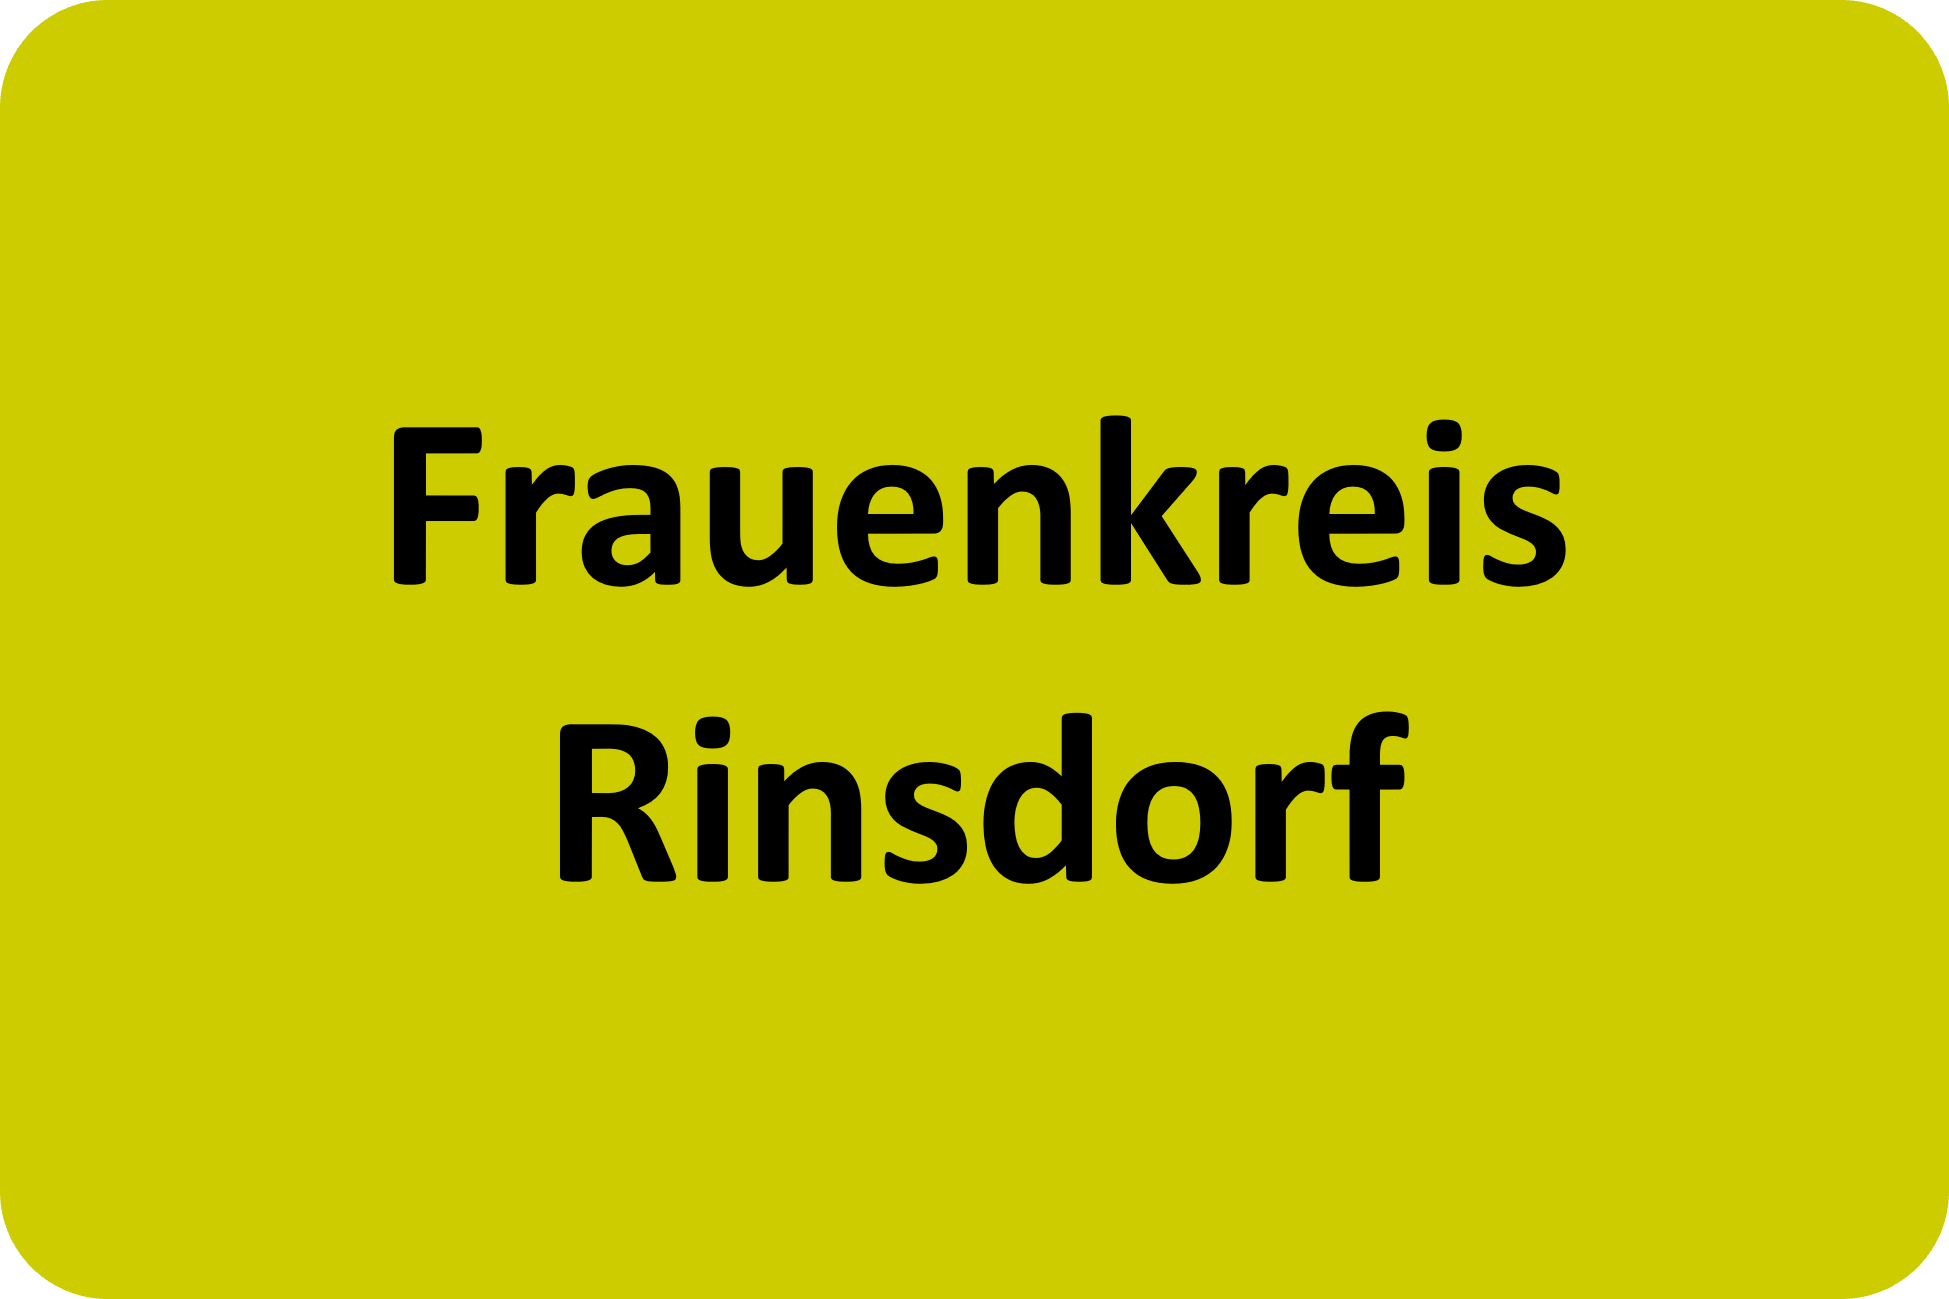 Frauenkreis Rinsdorf